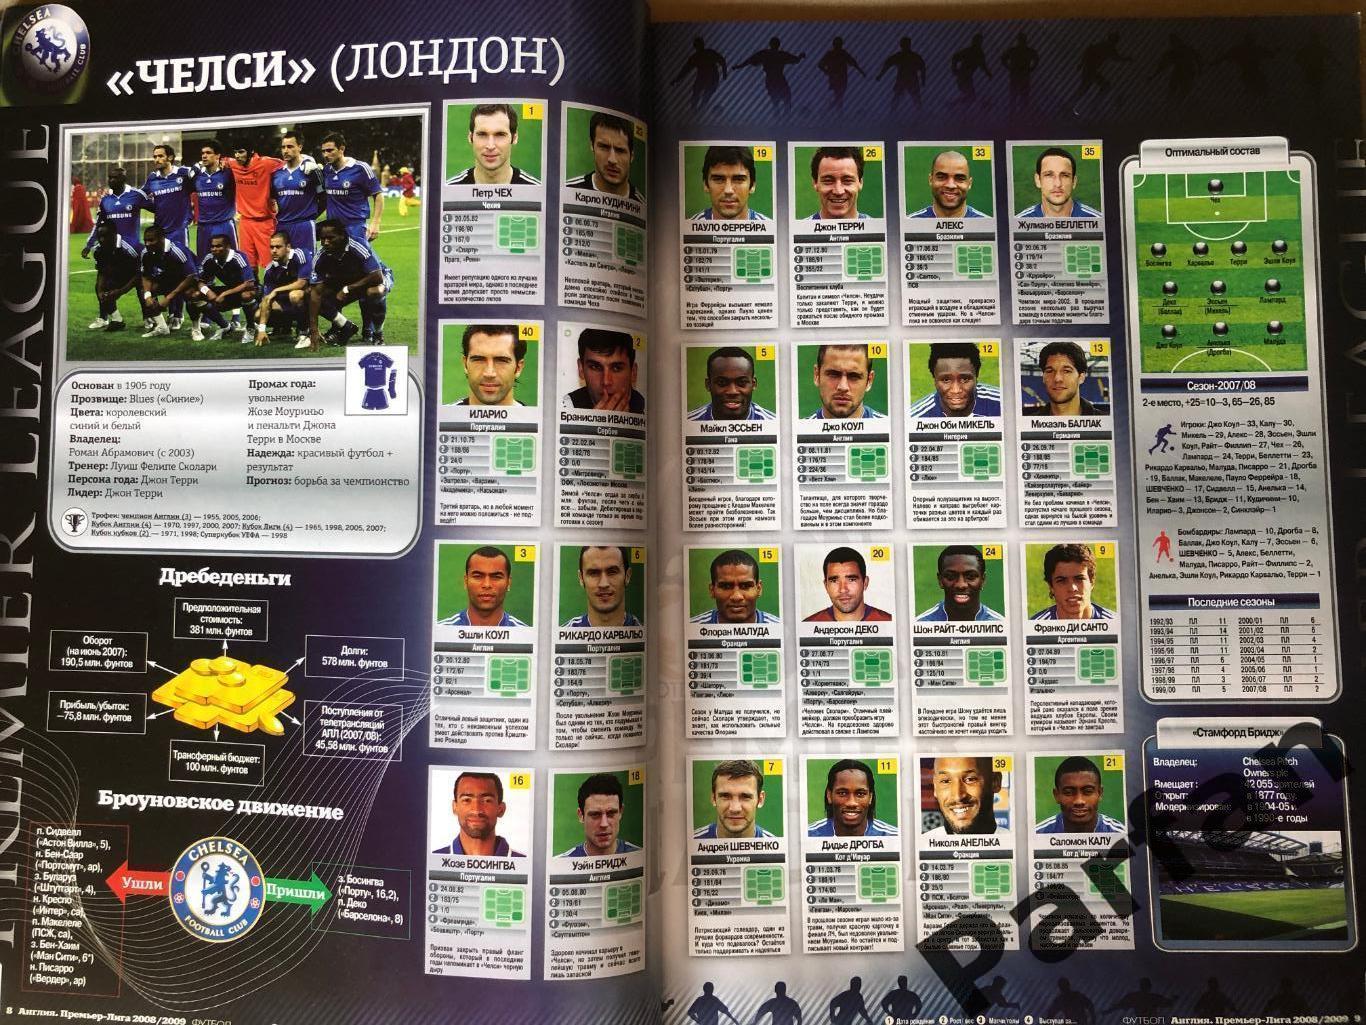 Журнал Футбол Україна Прем'єр Ліга Англія 2008/09 Спецвипуск 2